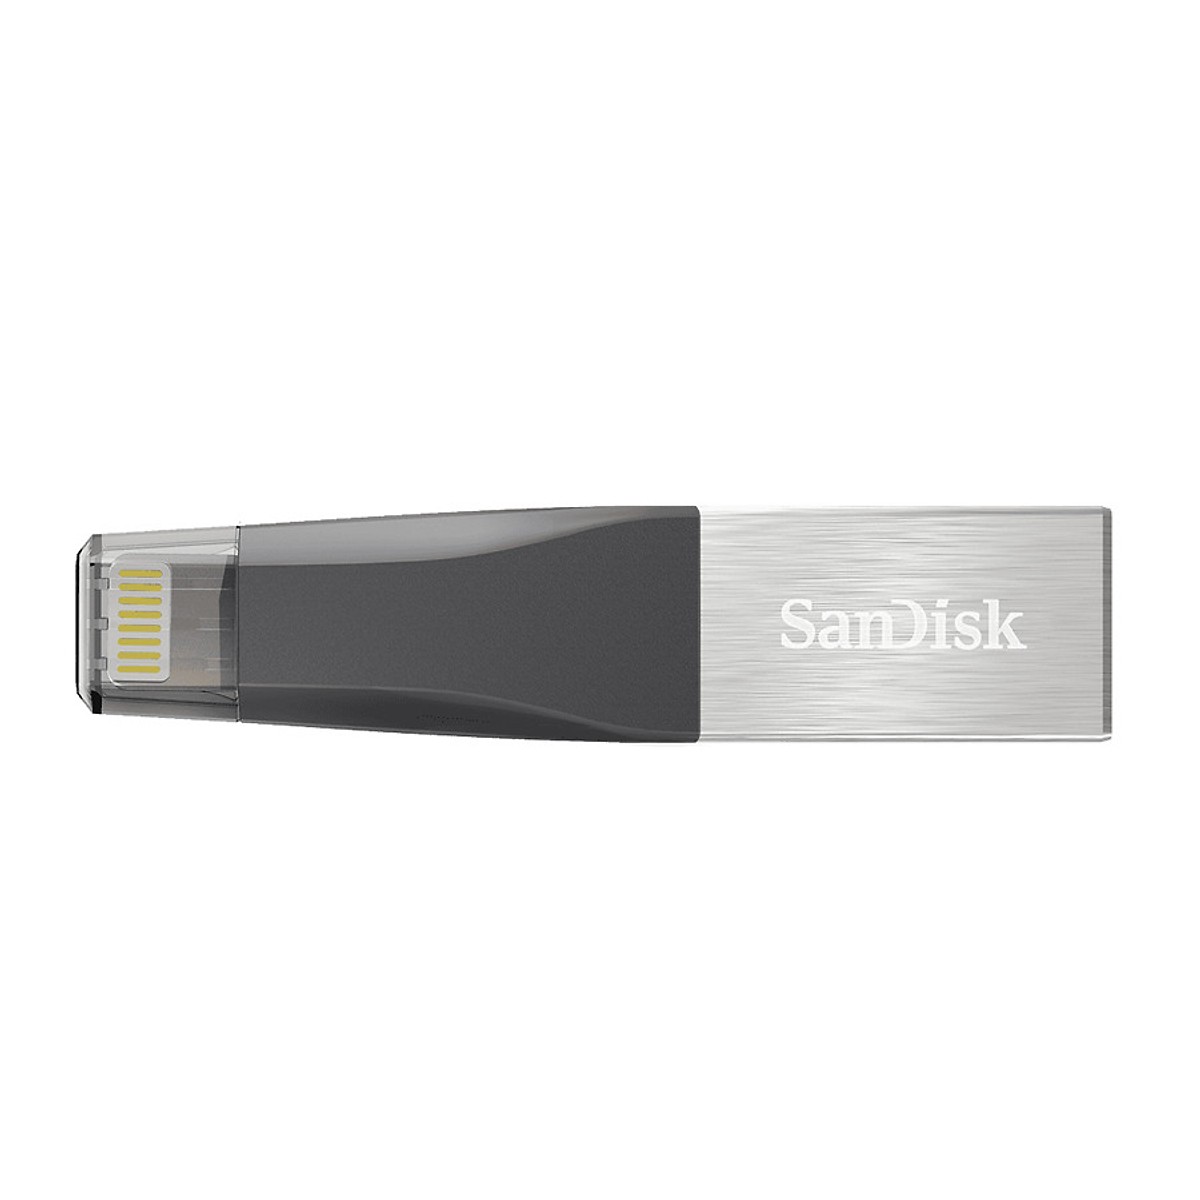 USB SanDisk iXpand IX40N 16GB - Hàng nhập khẩu